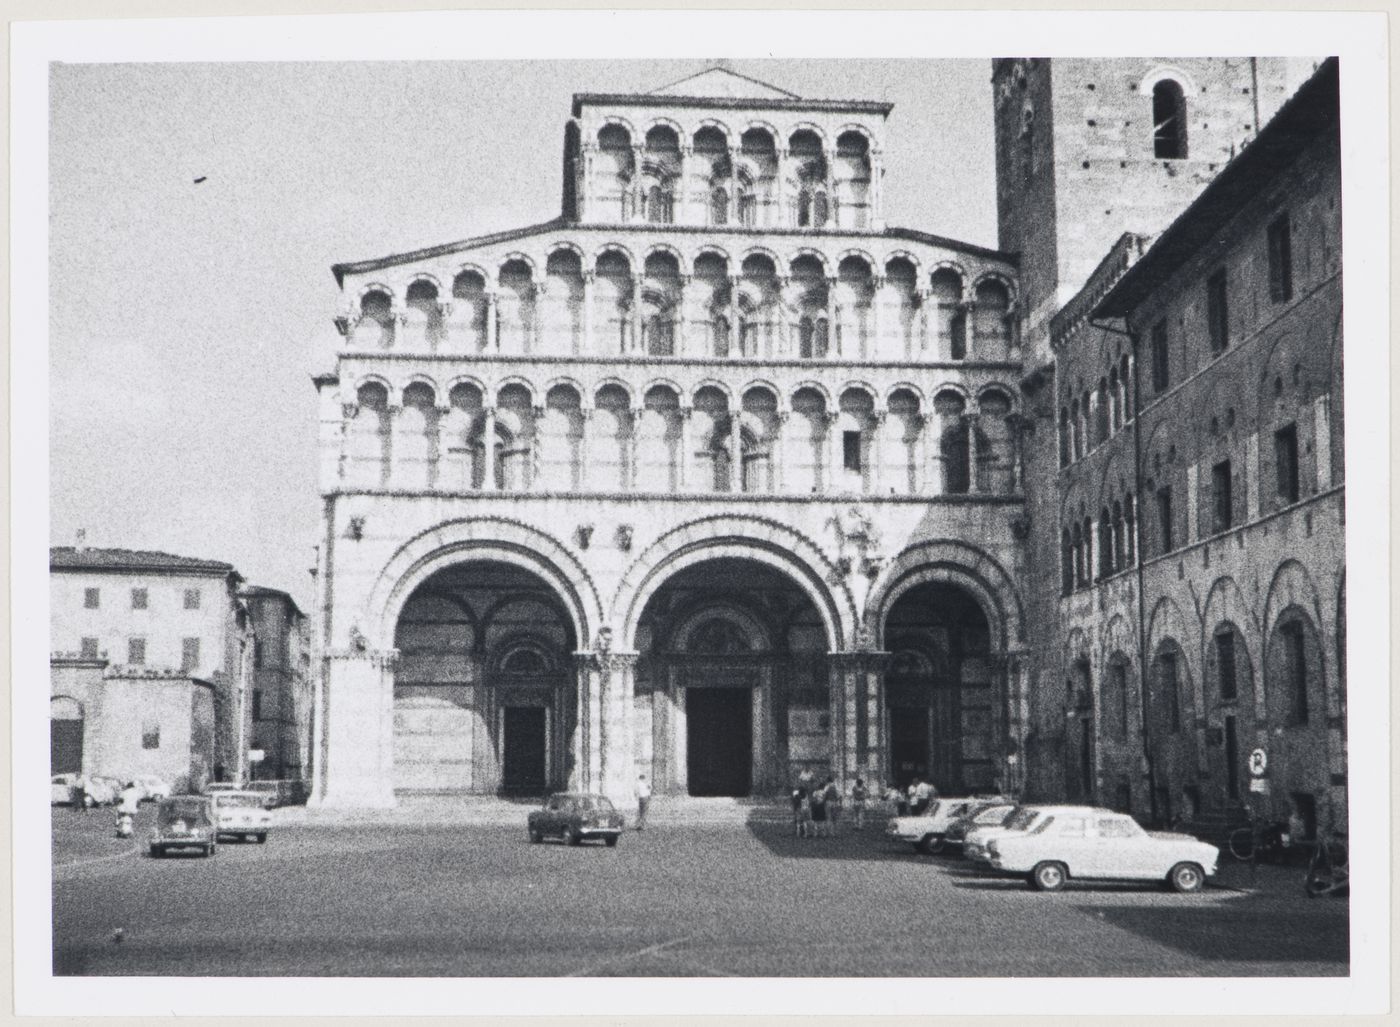 Cattedrale di San Martino, Lucca, Italy